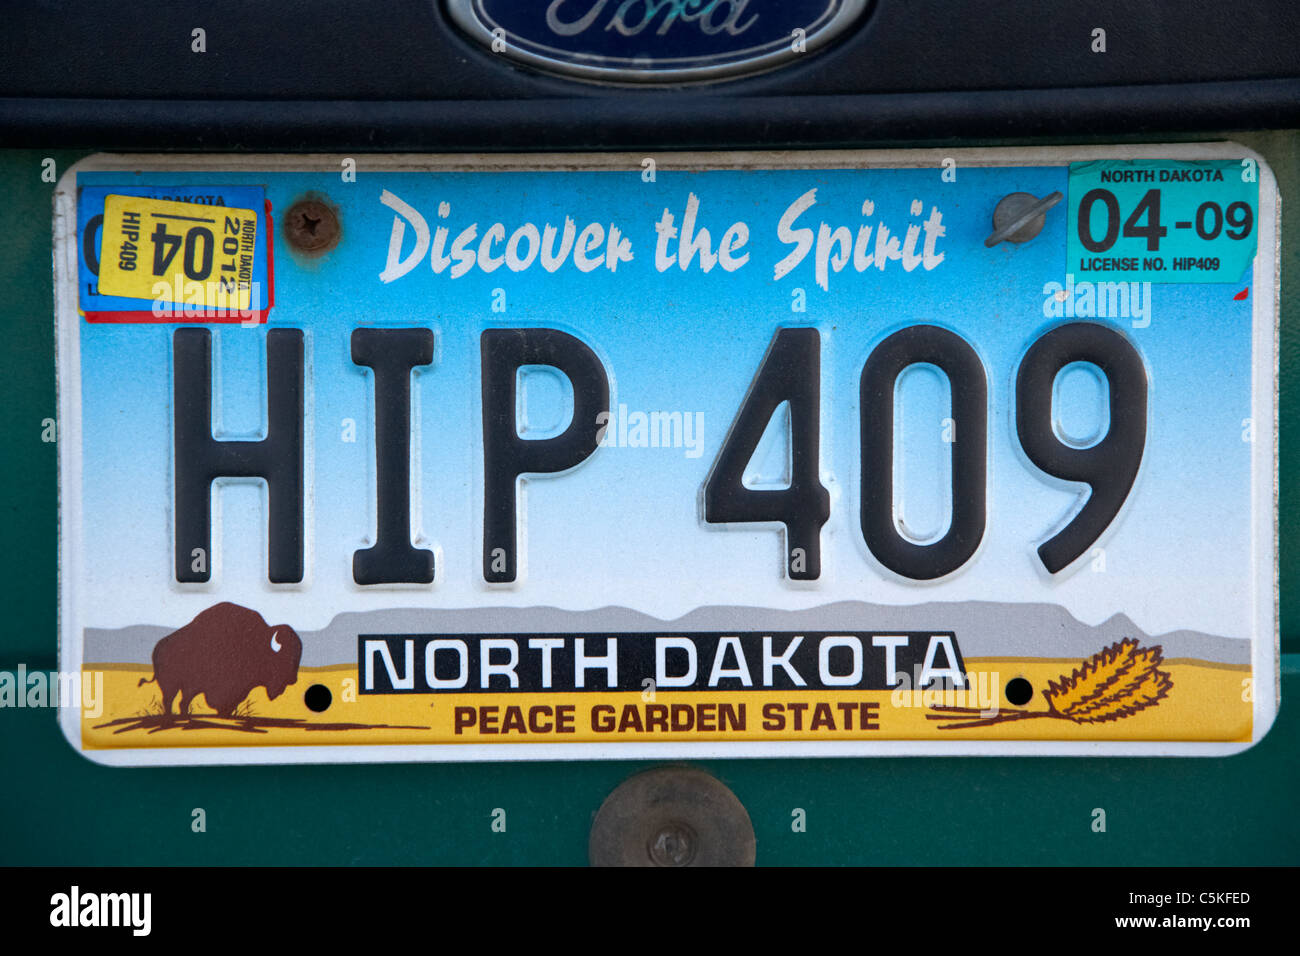 Découvrez l'esprit peace garden state Dakota du nord de l'état de la plaque d'immatriculation du véhicule usa Banque D'Images